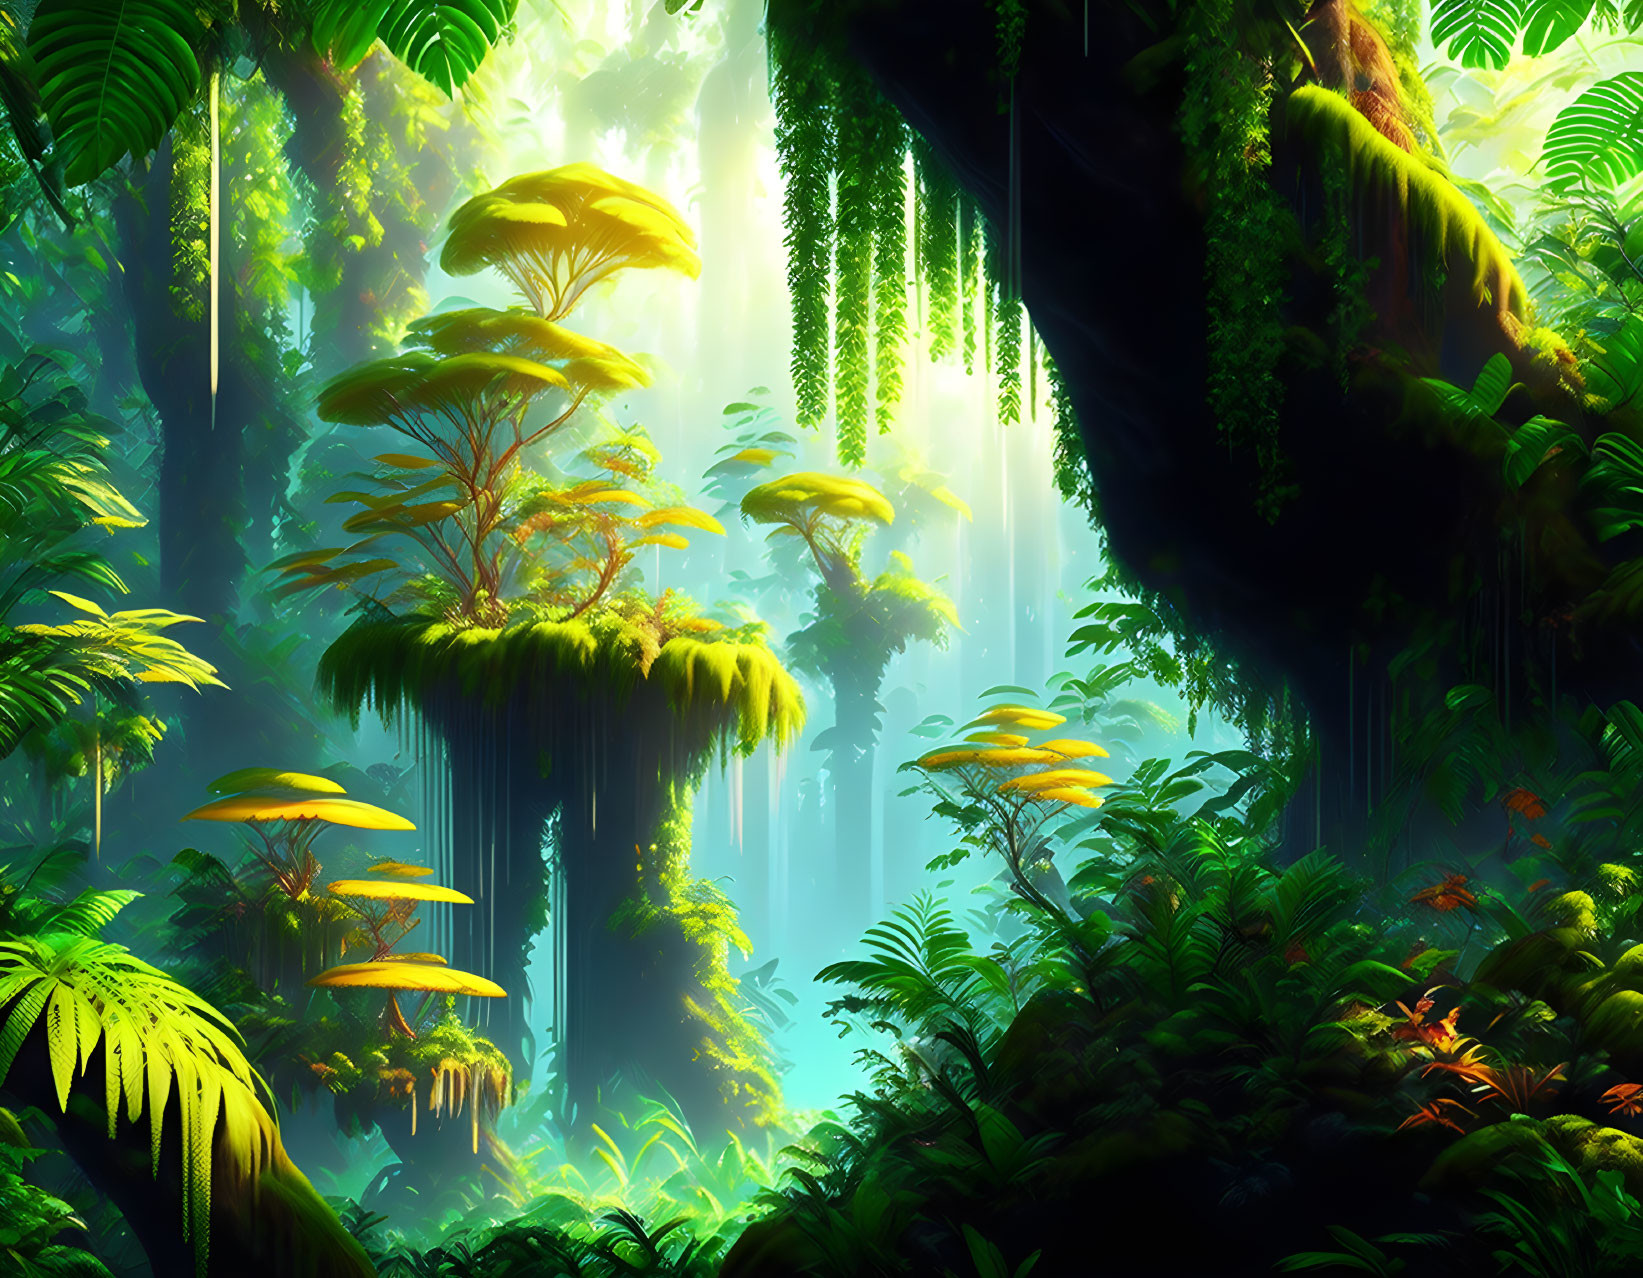 Lush Jungle Scene with Oversized Mushrooms and Exotic Foliage